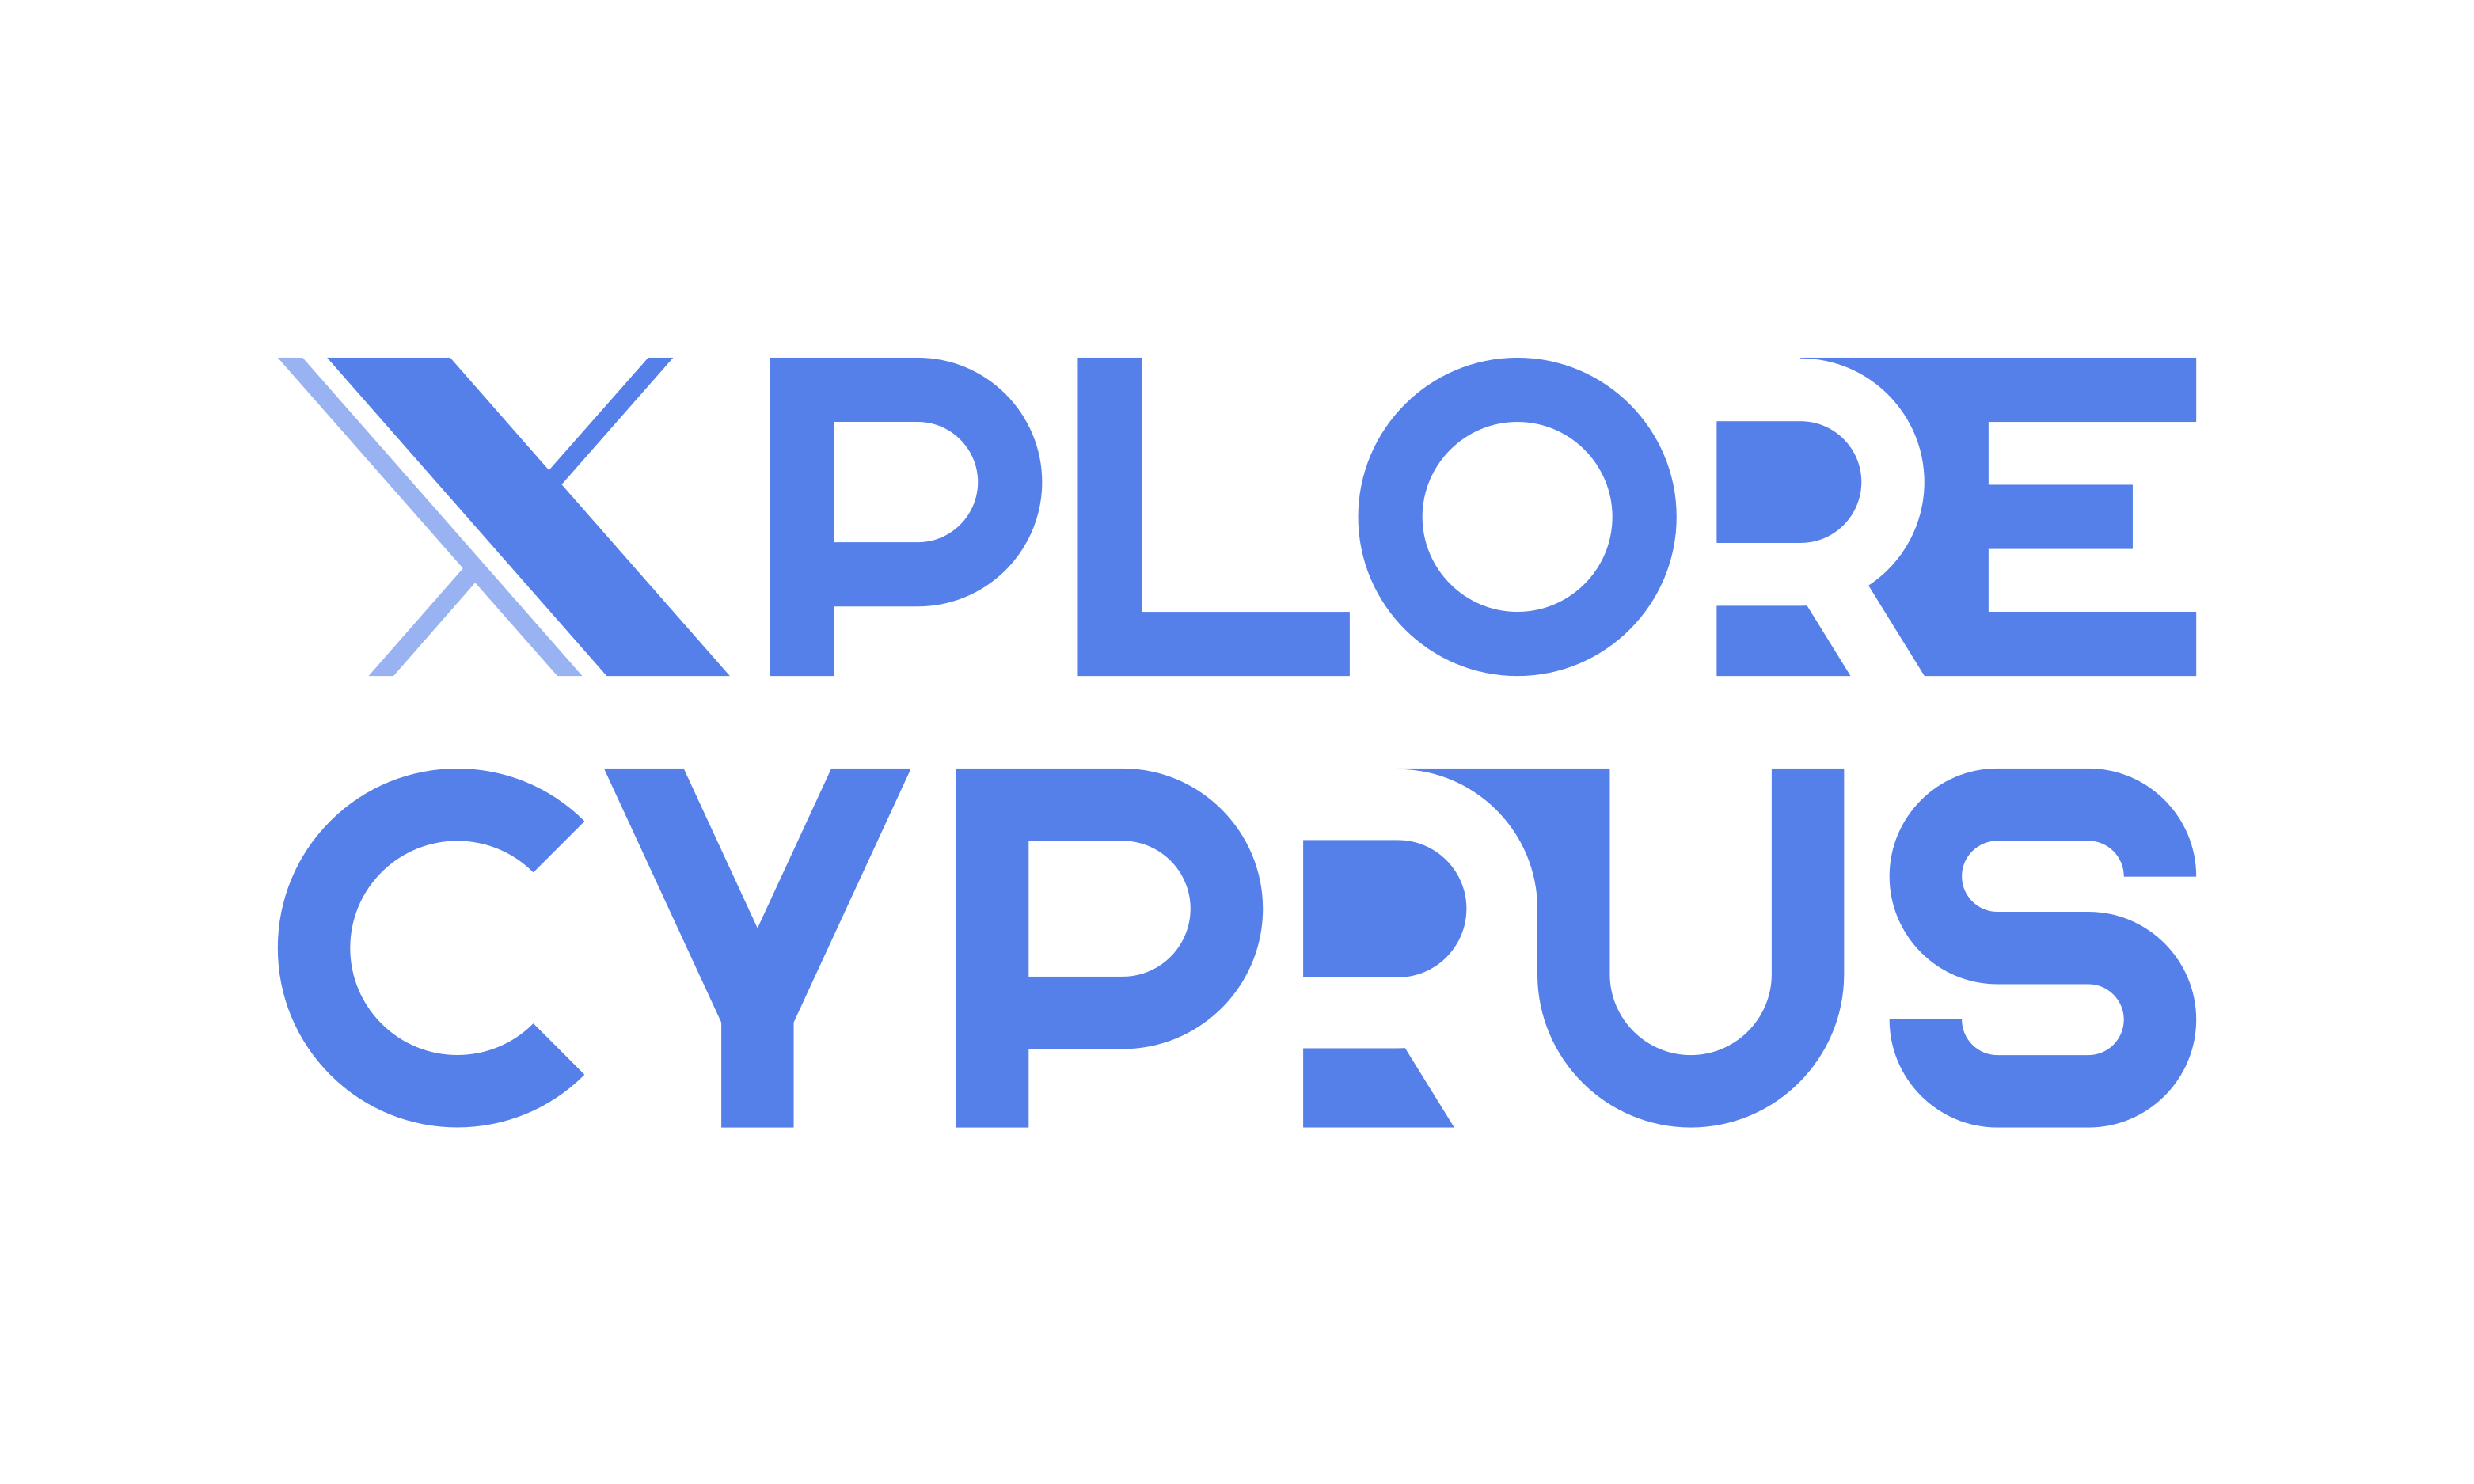 Explore Cyprus